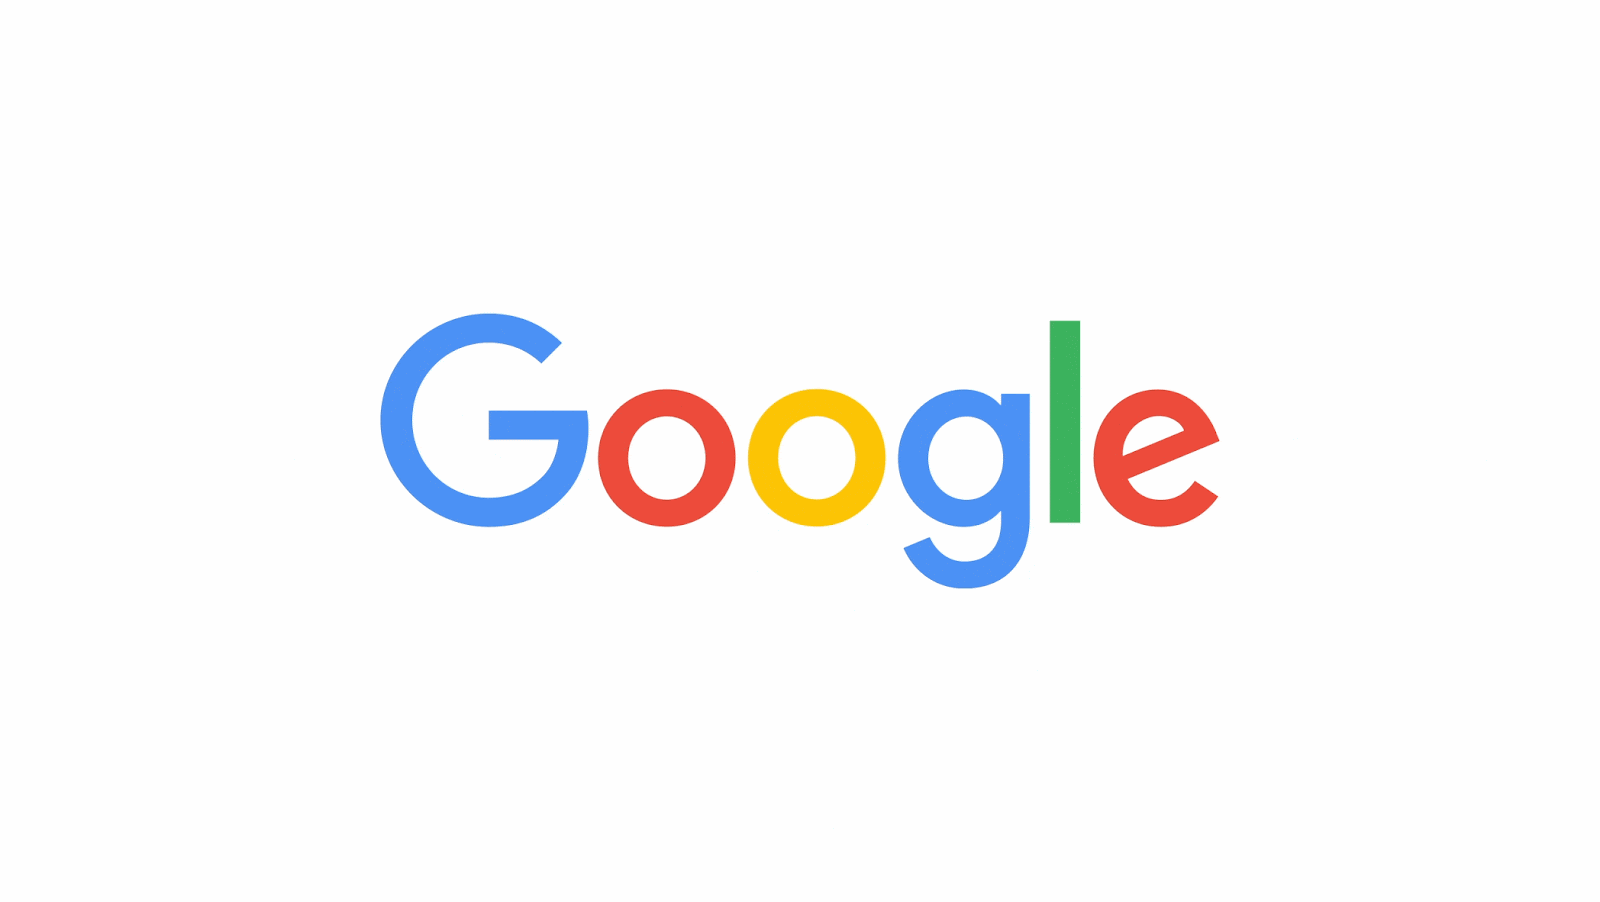 Ilustración animada de Google con el número 25 apareciendo sobre las letras.